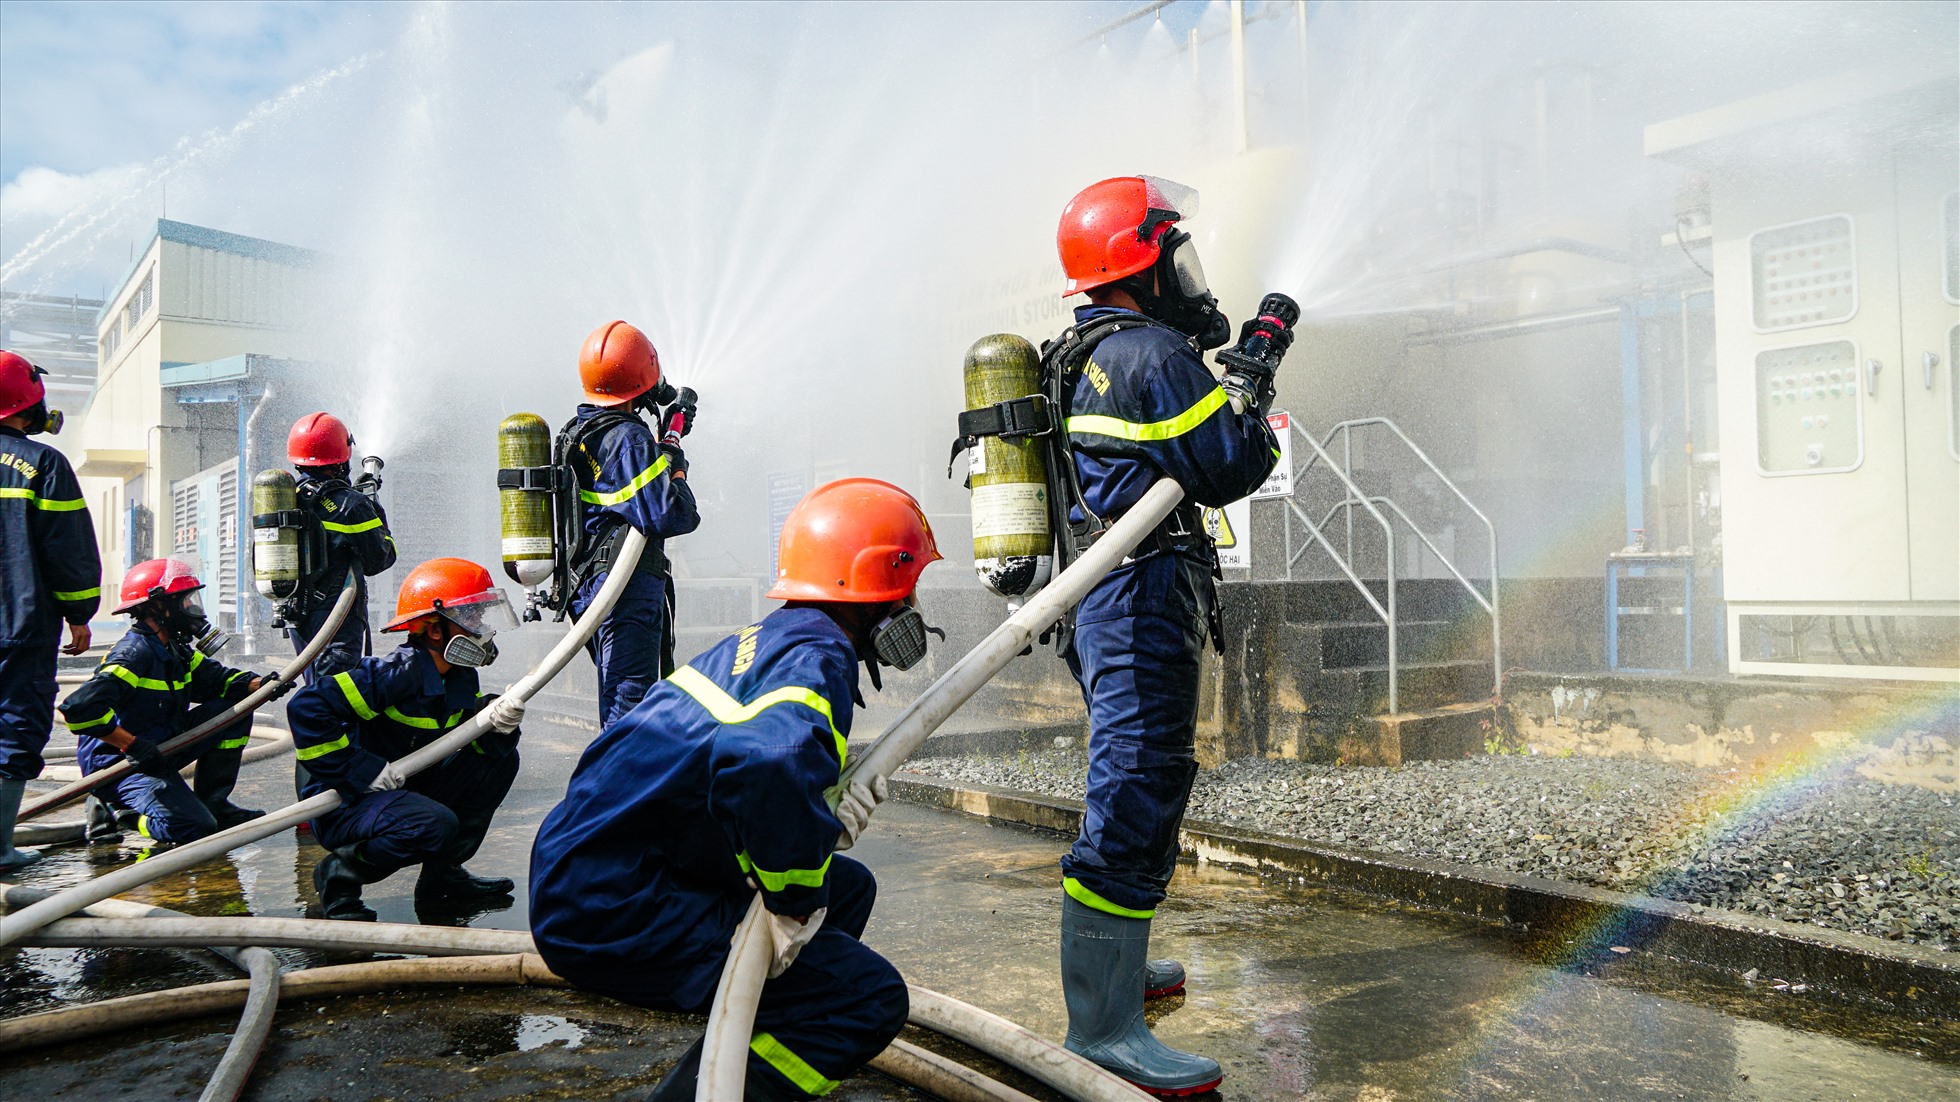 Lực lượng chữa cháy chuyên nghiệp của Công an TP. Cần Thơ nhanh chóng có mặt dập tắt đám cháy.